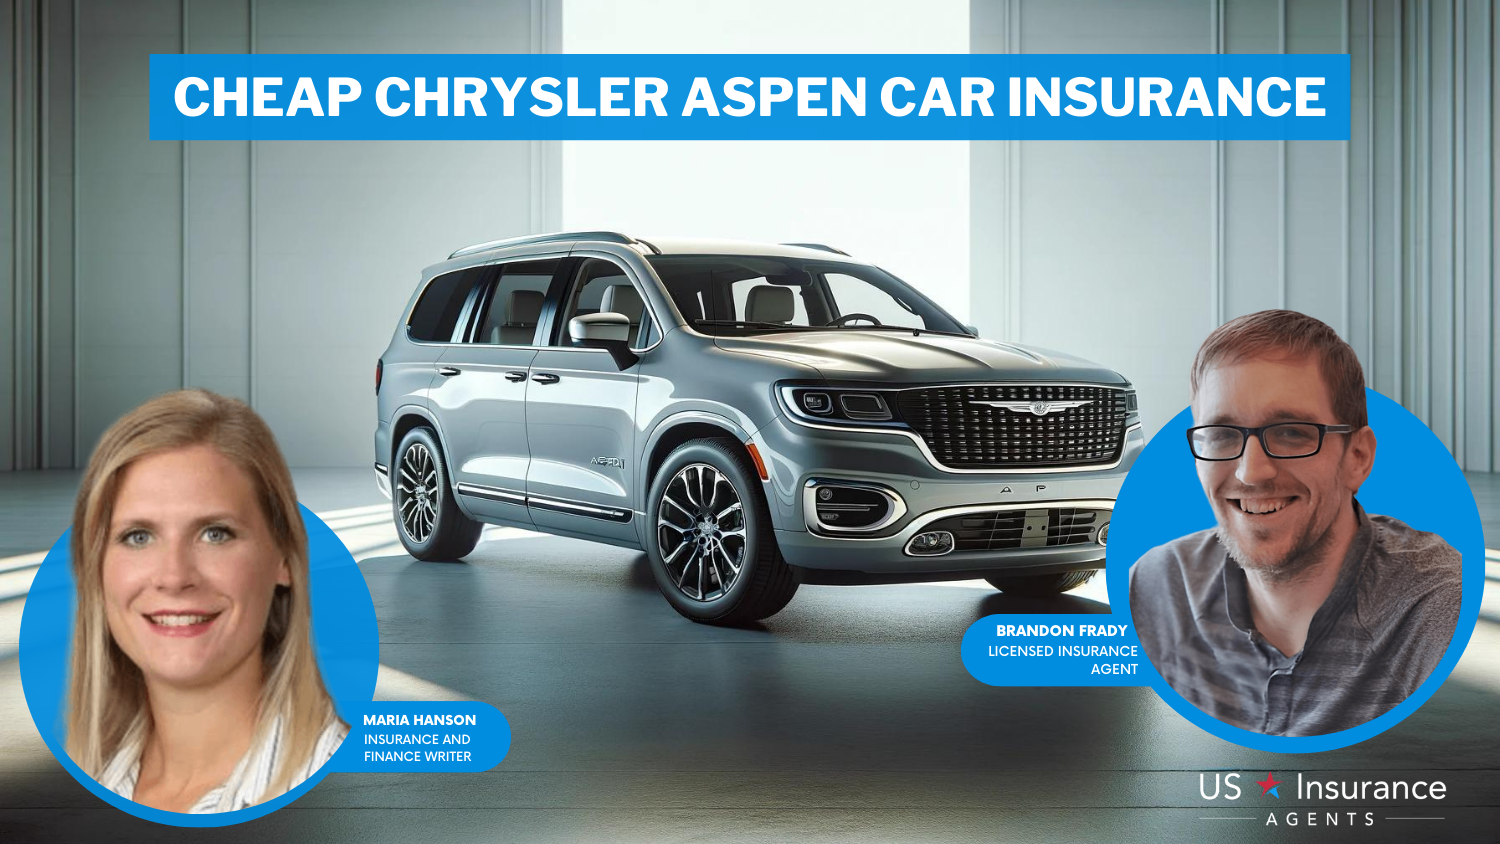 Farmers, USAA, Nationwide: Cheap Chrysler Aspen Car Insurance